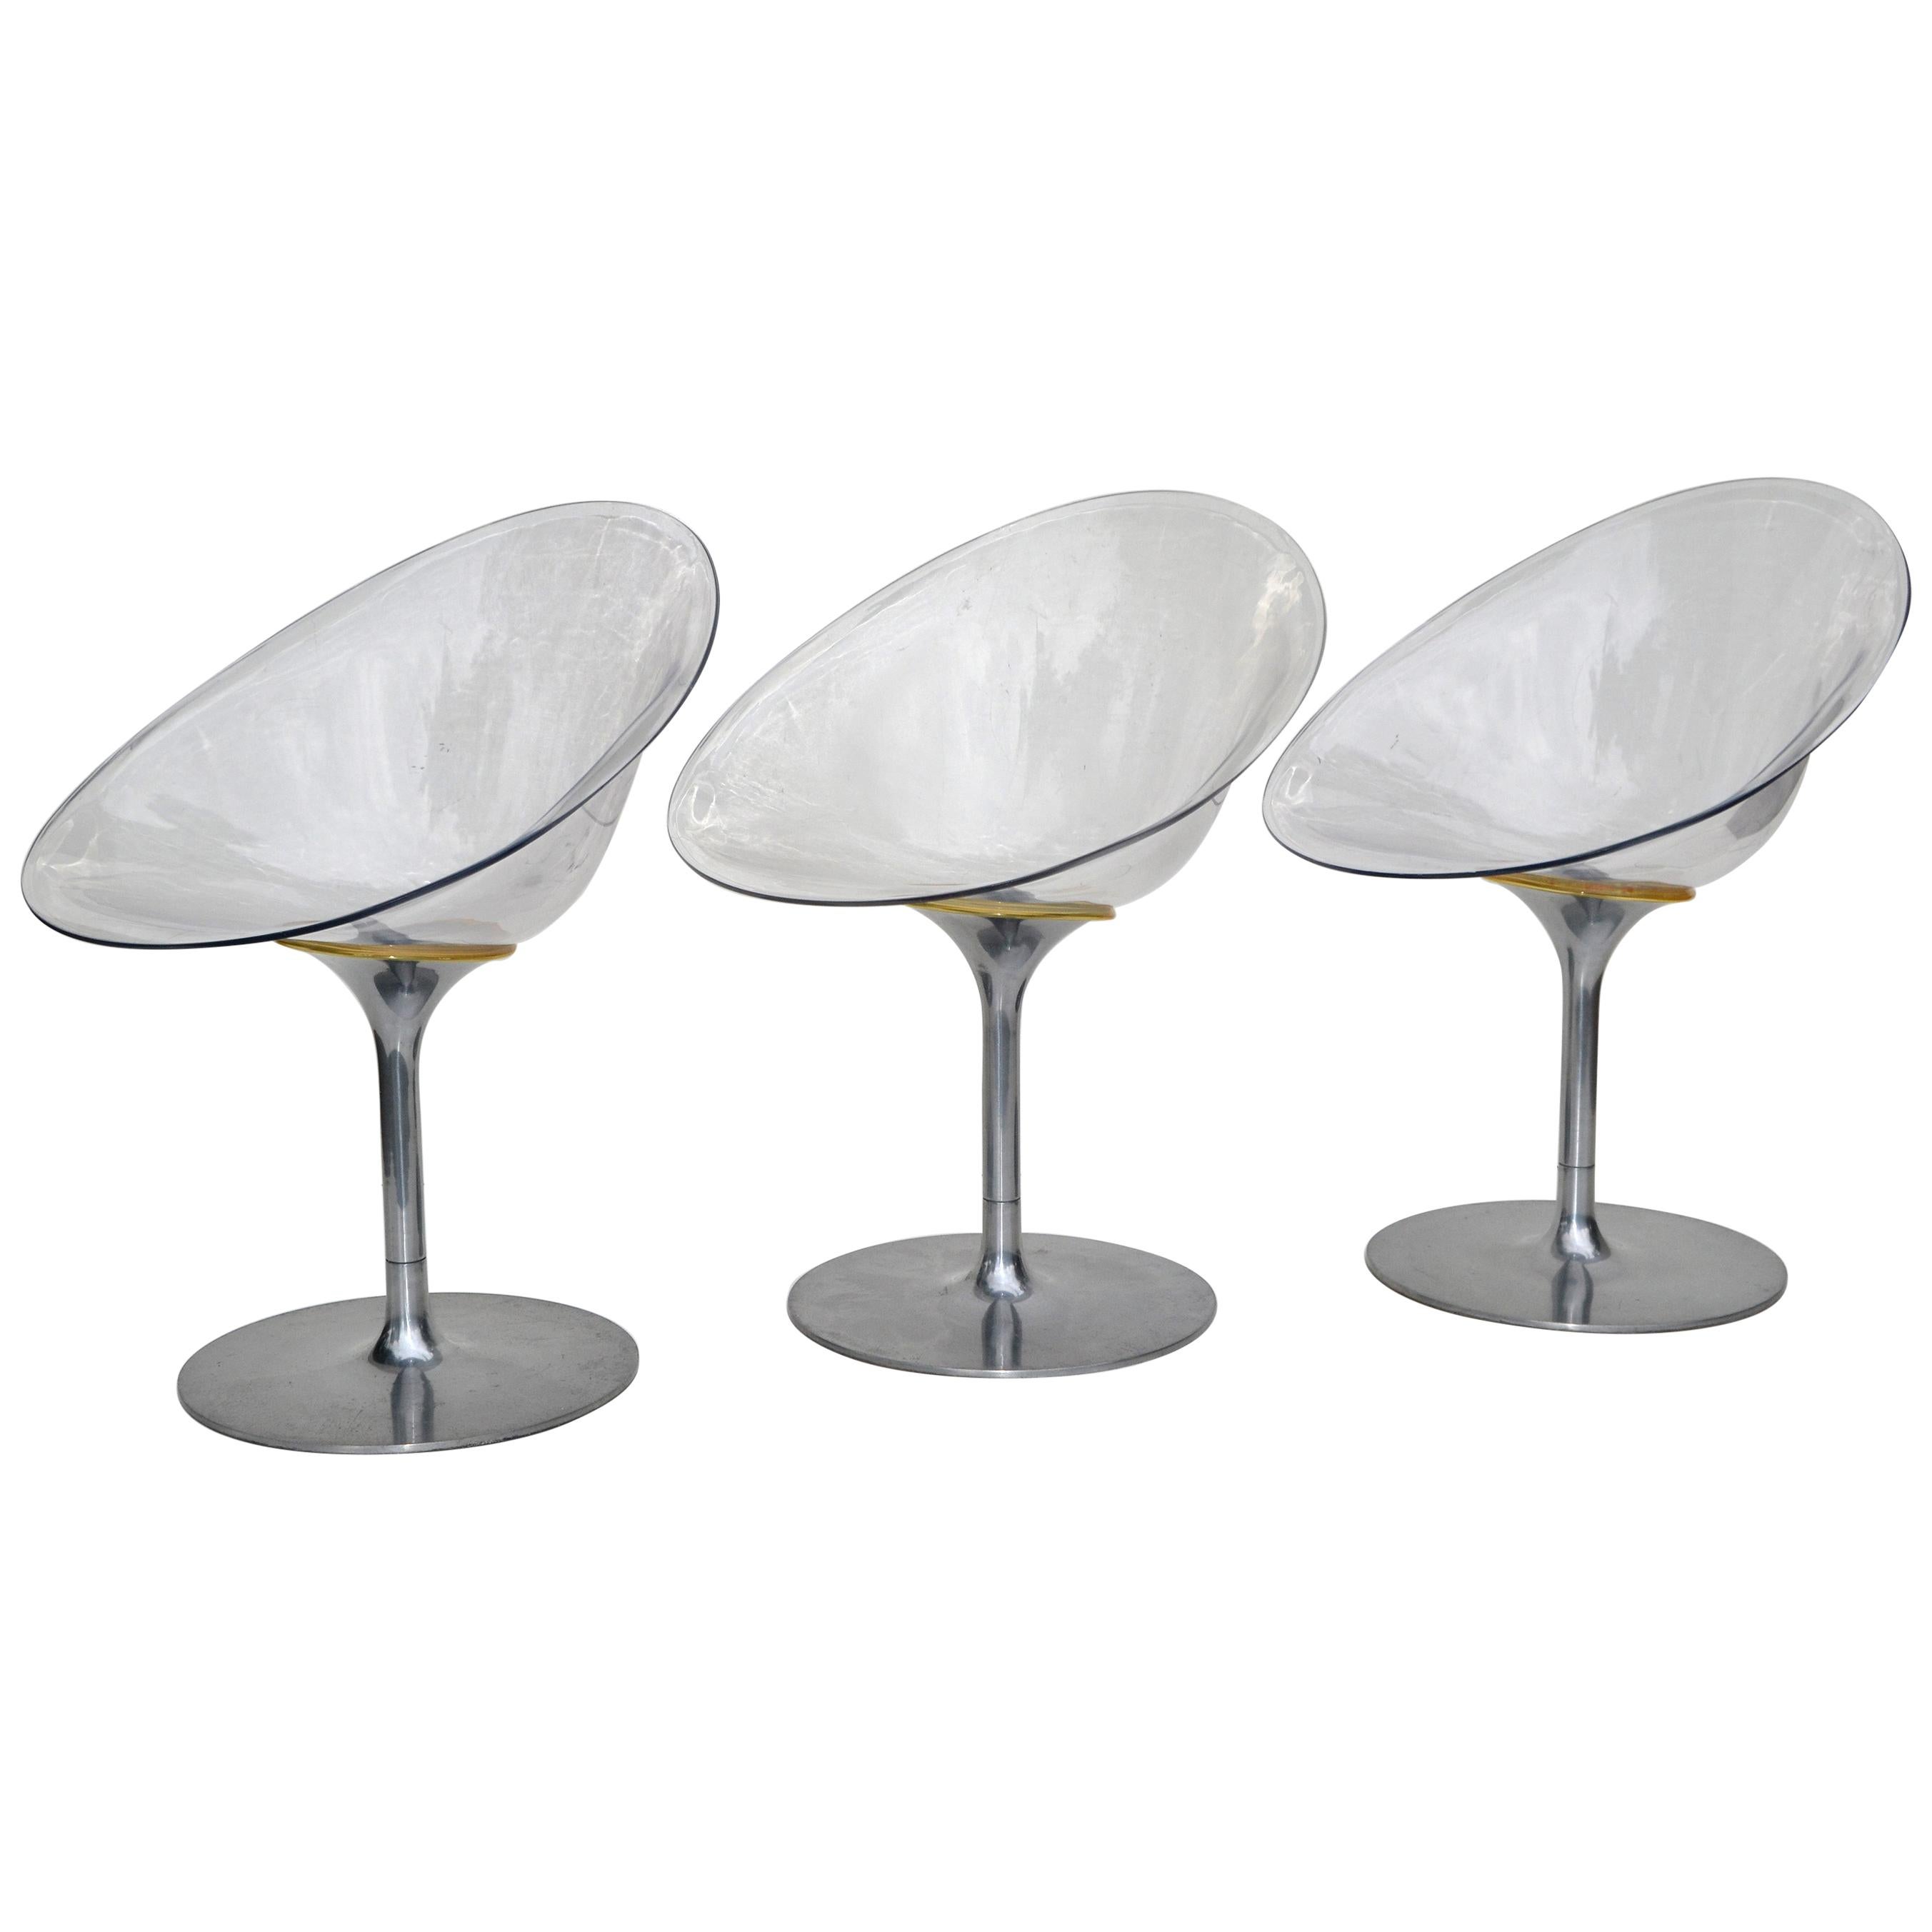 Chaises italiennes pivotantes Eros en lucite transparente de Philippe Starck pour Kartell, lot de 3